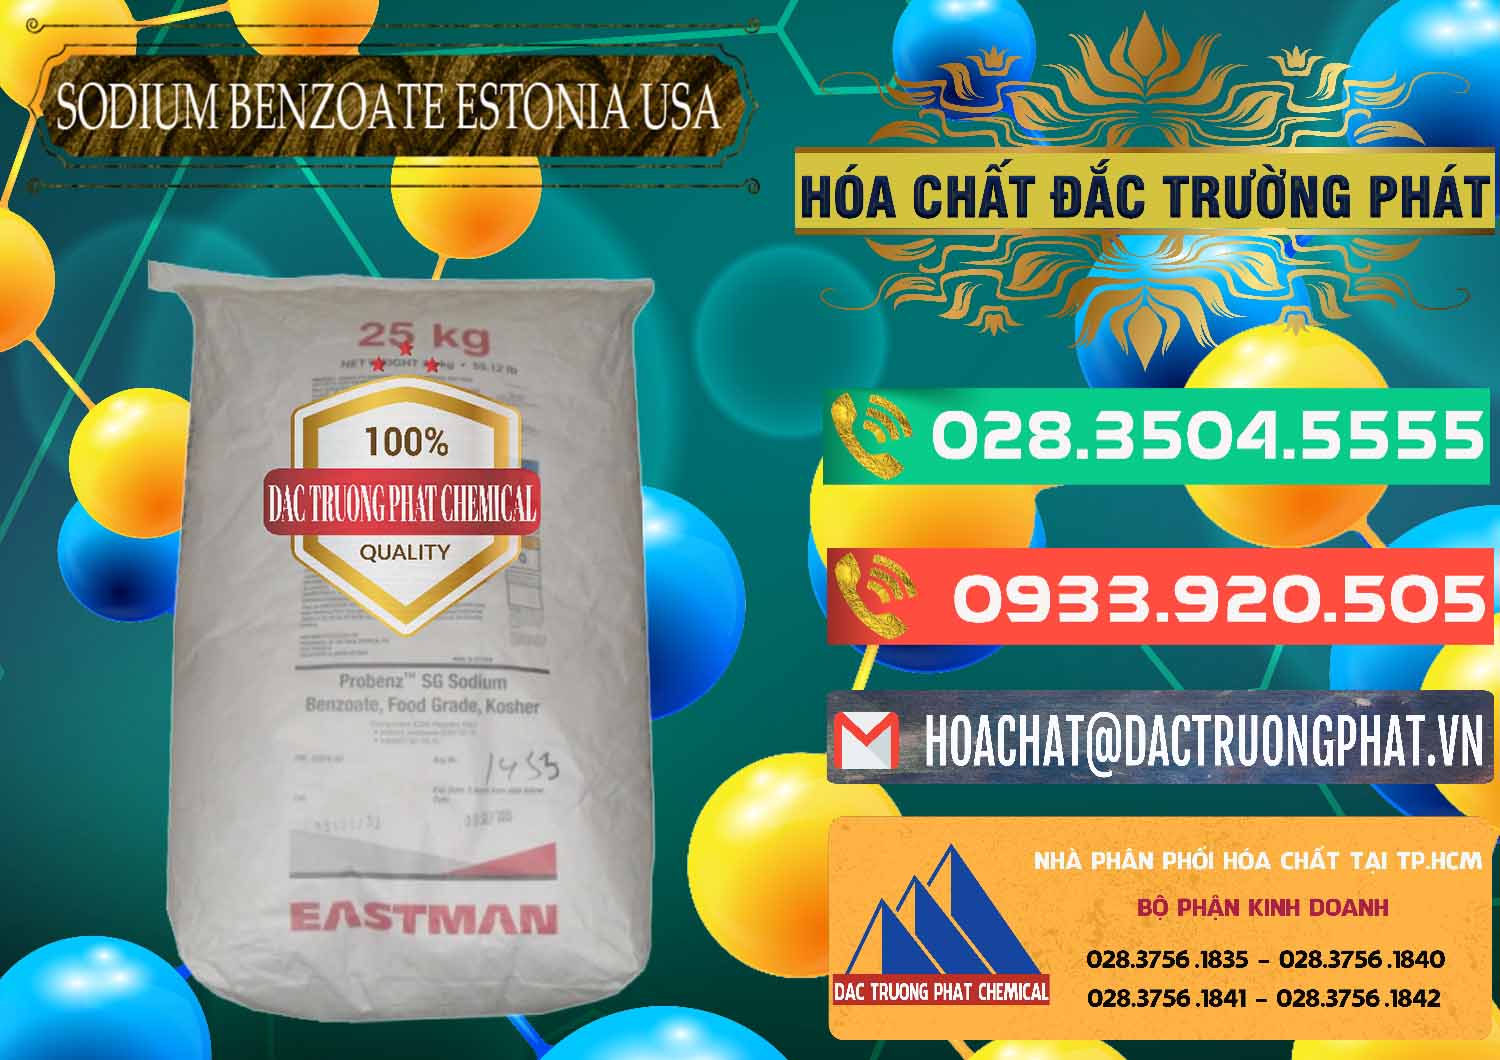 Chuyên kinh doanh và bán Sodium Benzoate - Mốc Bột Estonia Mỹ USA - 0468 - Nhà cung cấp & nhập khẩu hóa chất tại TP.HCM - congtyhoachat.com.vn